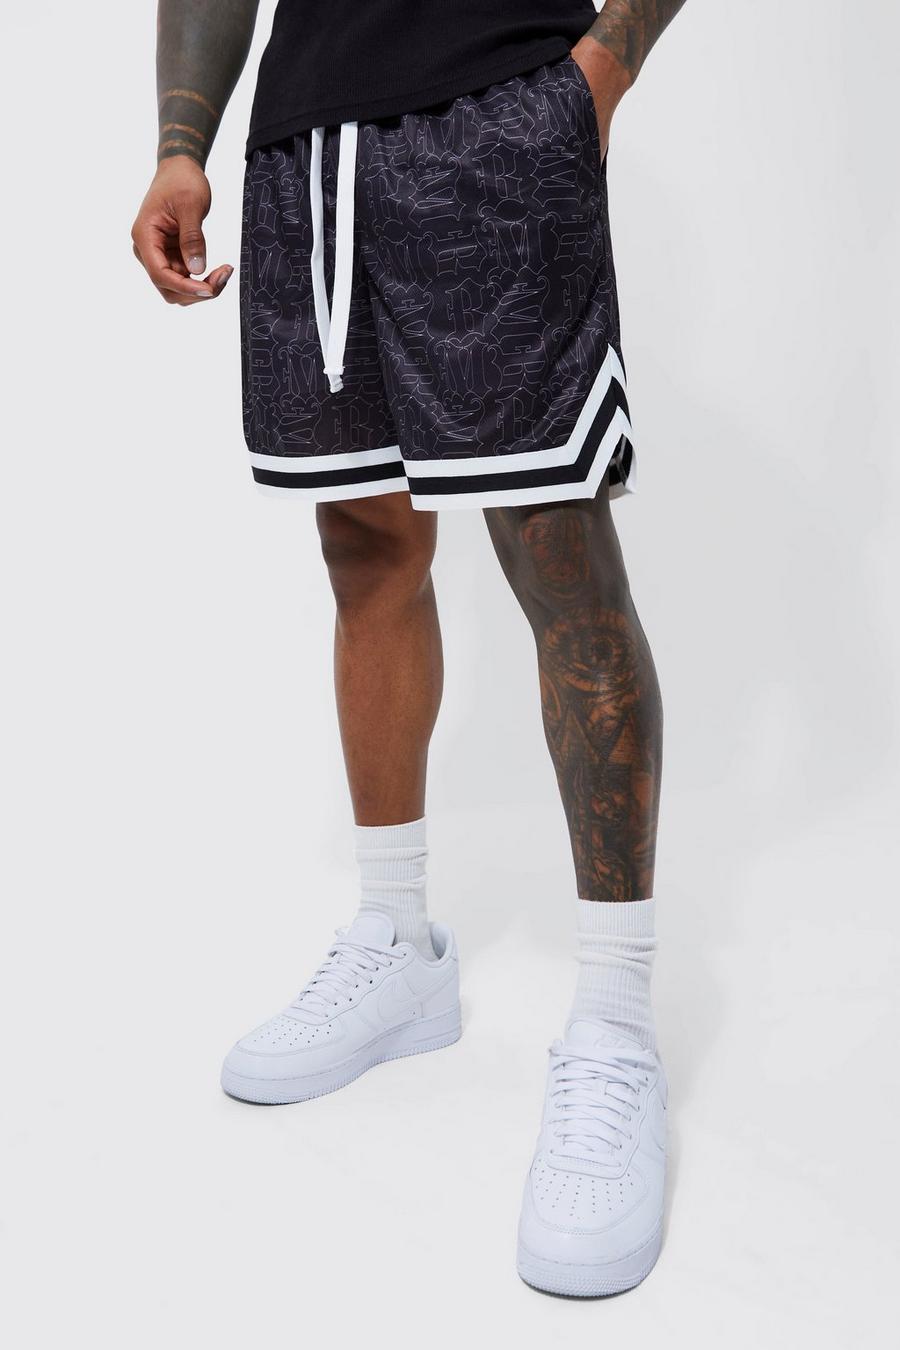 Pantaloncini da basket corti comodi in rete con lettere BM, Black nero